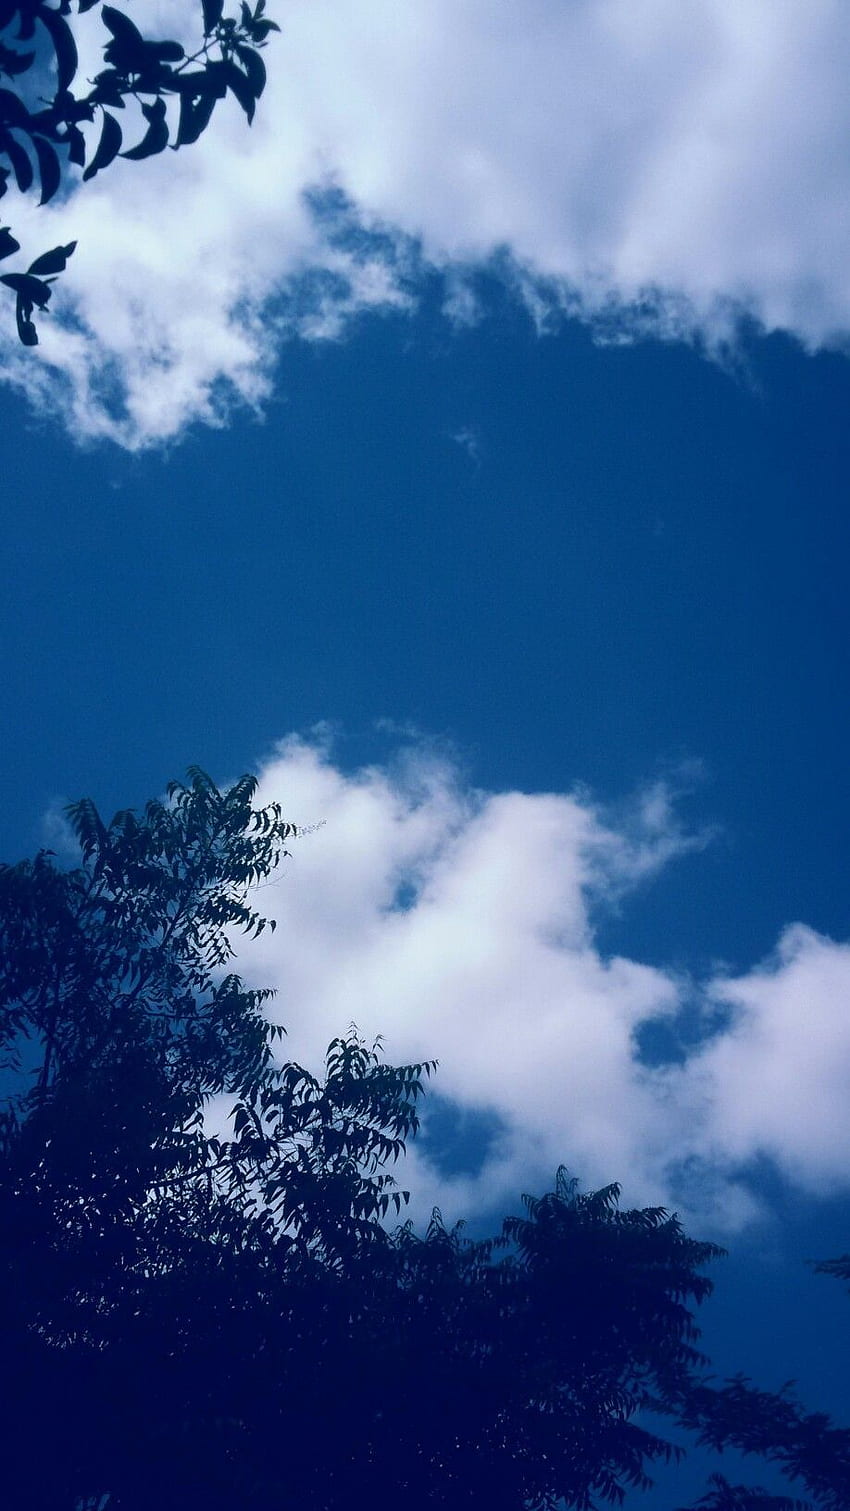 Hình nền mây xanh dương đẹp mắt sẽ khiến bạn xuýt xoa trước vẻ đẹp của thiên nhiên. Cảm giác yên bình và trầm lắng tràn ngập từ bức ảnh này sẽ giúp bạn đạt được sự tập trung cao nhất cho công việc. Không bao giờ là quá muộn để tải ngay và thưởng thức bức tranh thiên nhiên đậm chất nghệ thuật này.